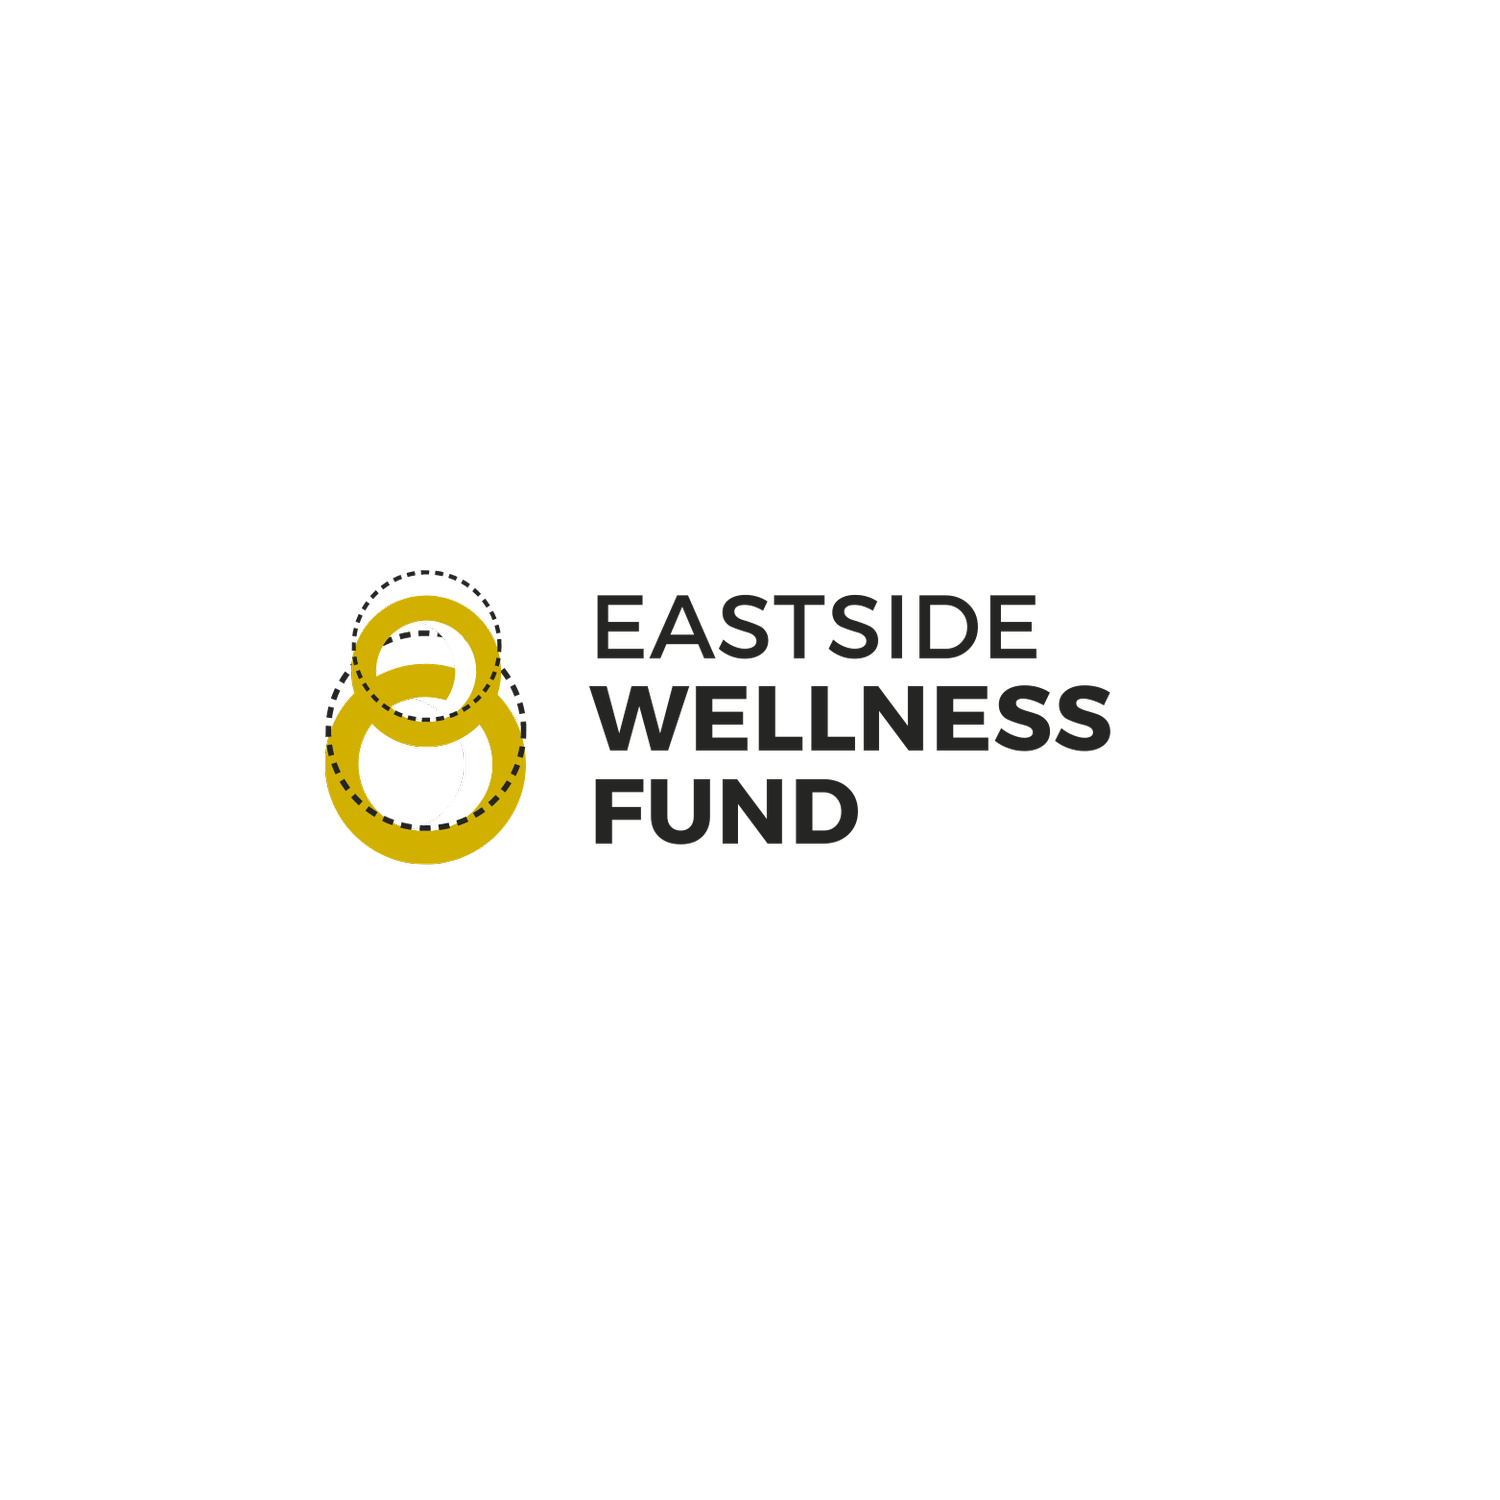 Eastside Wellness Fund